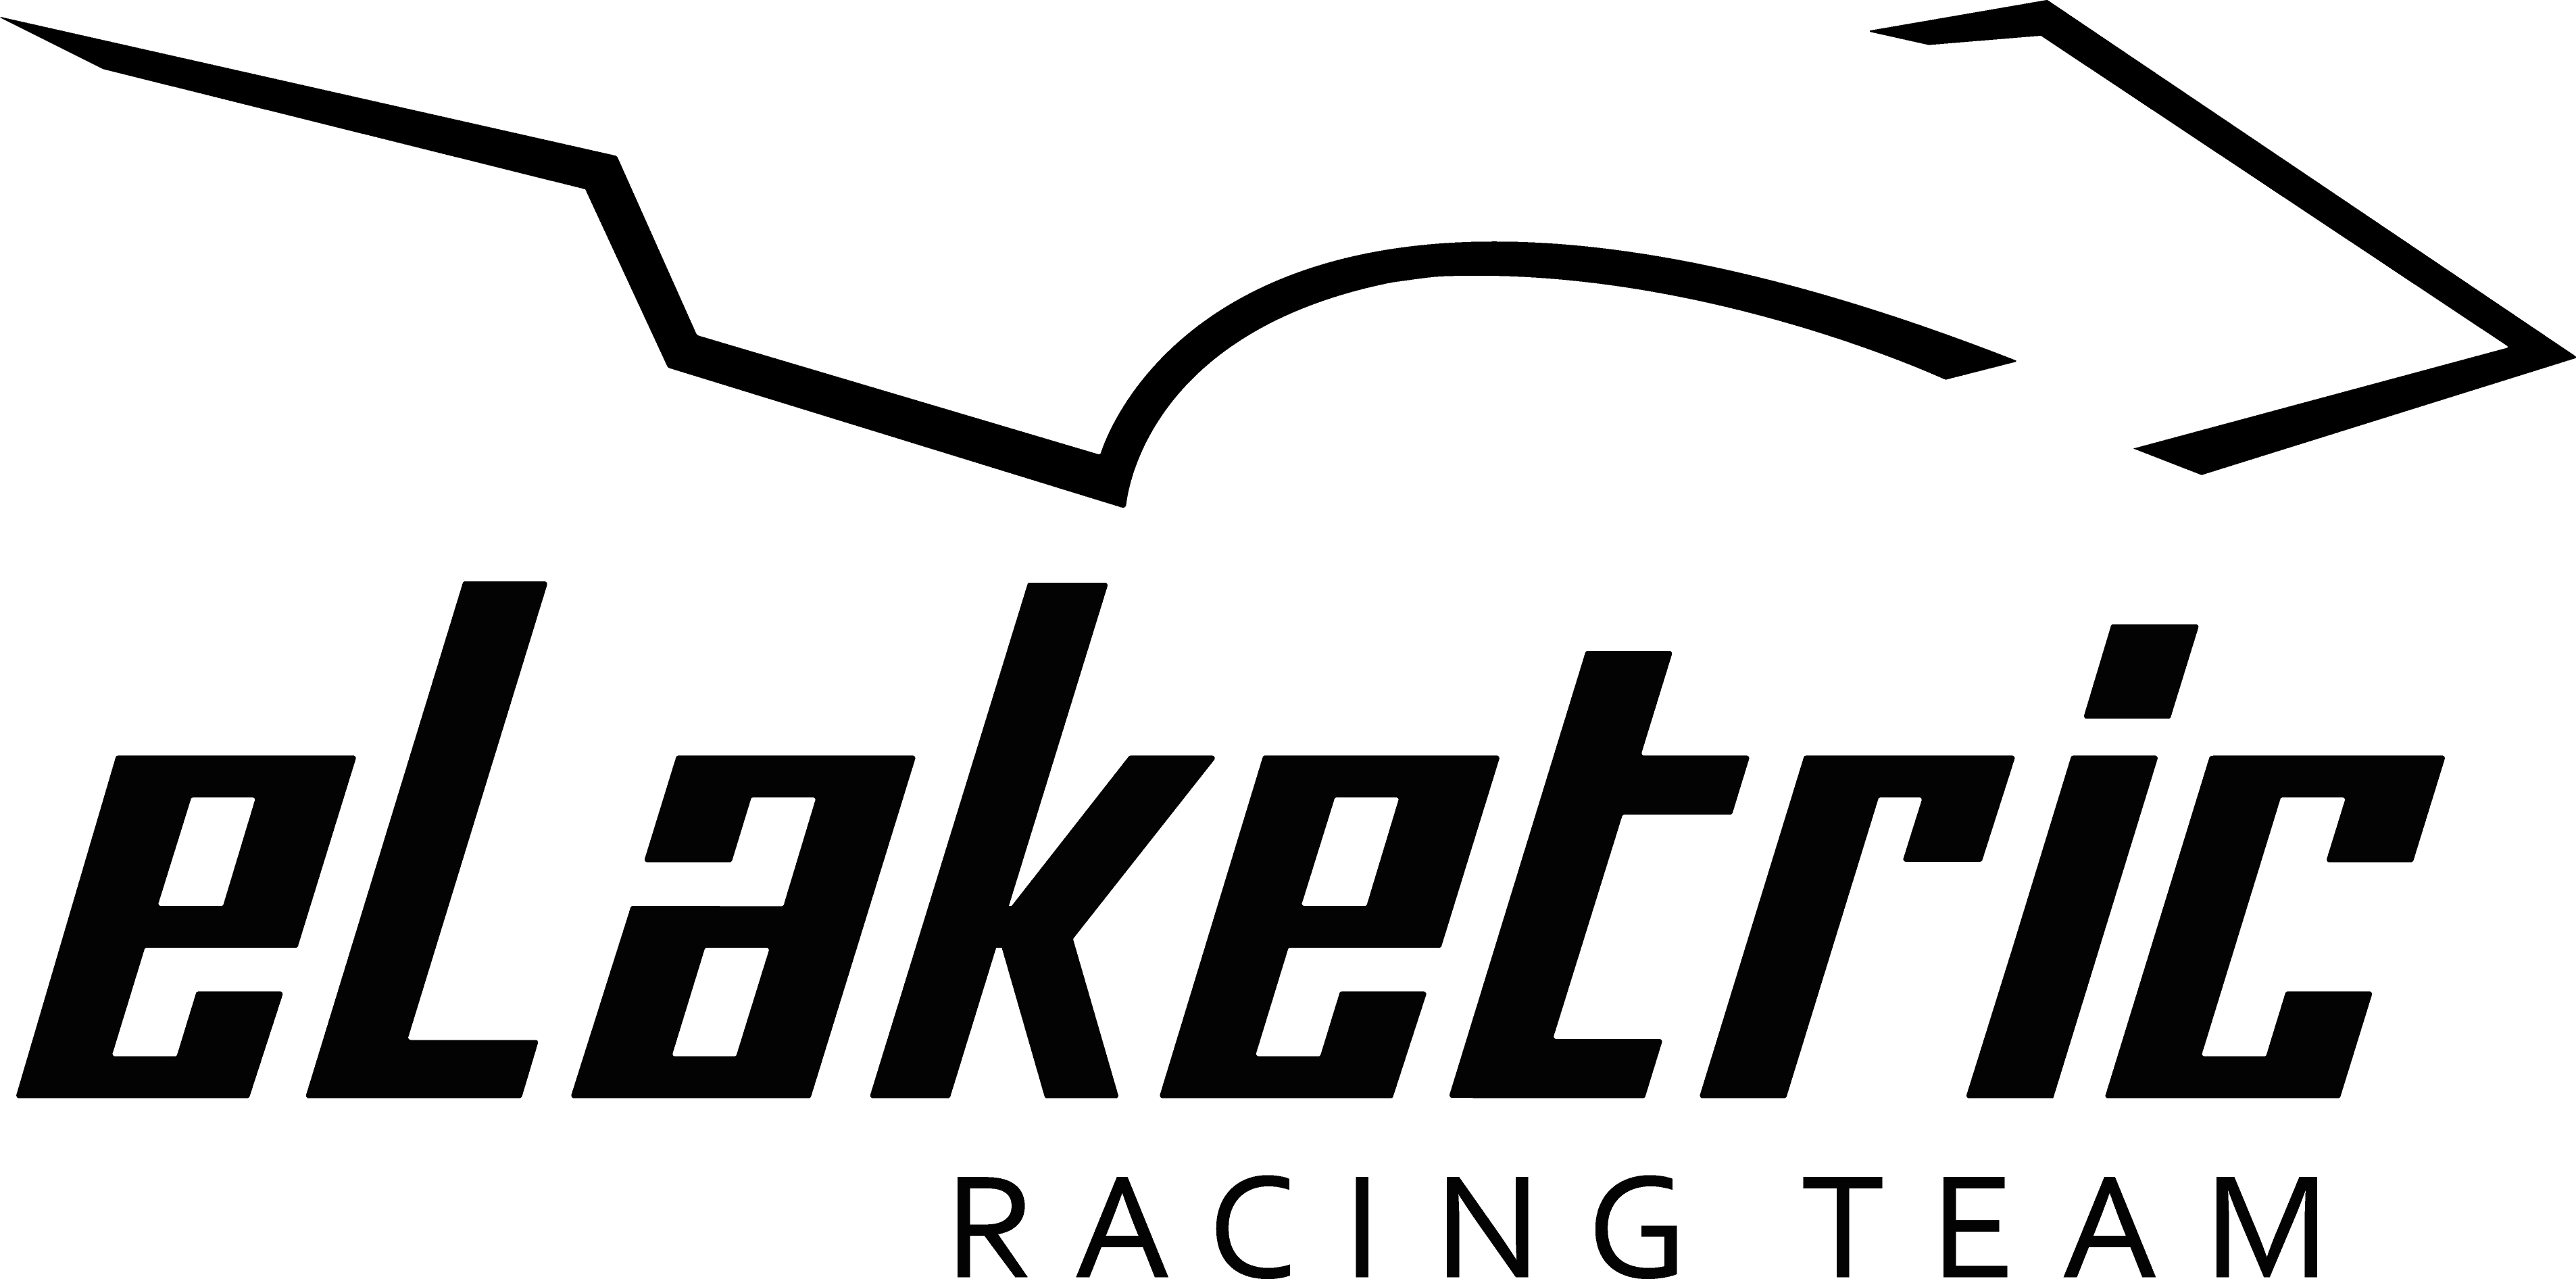 eLaketric Racing team UAS Constance